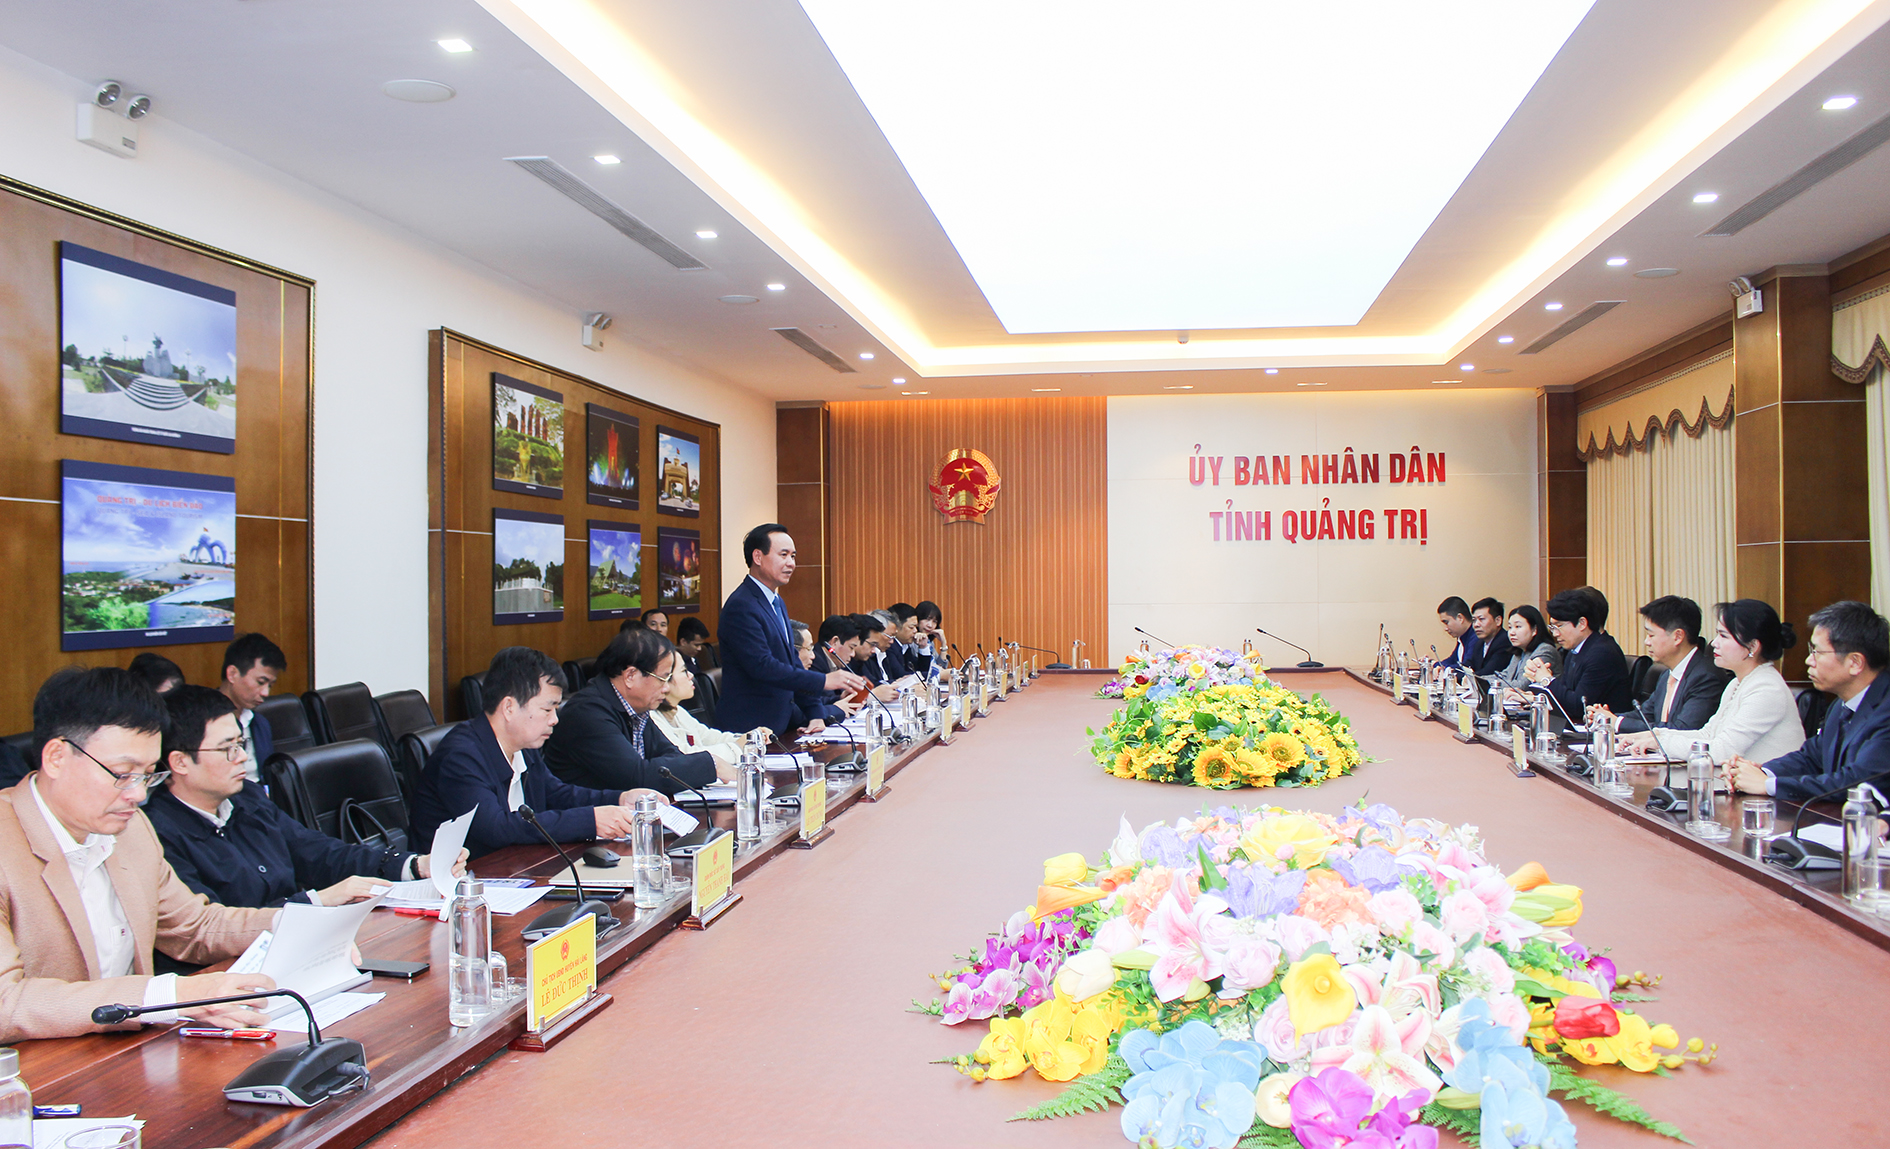 UBND tỉnh Quảng Trị yêu cầu các đơn vị liên quan tăng cường phối hợp giữa nhà đầu tư và tỉnh để tháo gỡ khó khăn, đẩy nhanh tiến độ Dự án Trung tâm điện khí LNG Hải Lăng giai đoạn 1